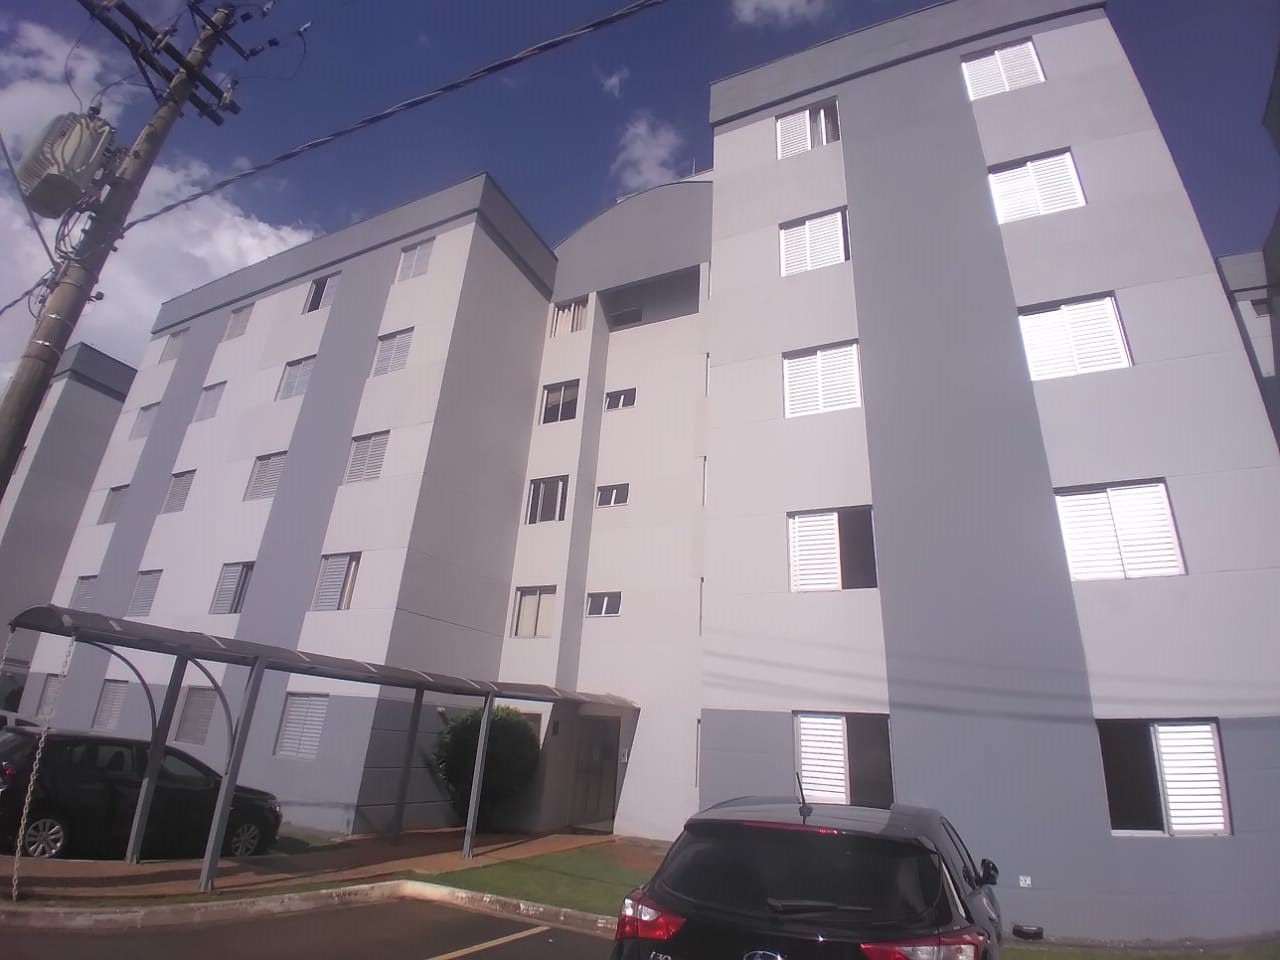 Apartamento à venda, 2 quartos, 1 vaga, no bairro Dois Córregos em Piracicaba - SP